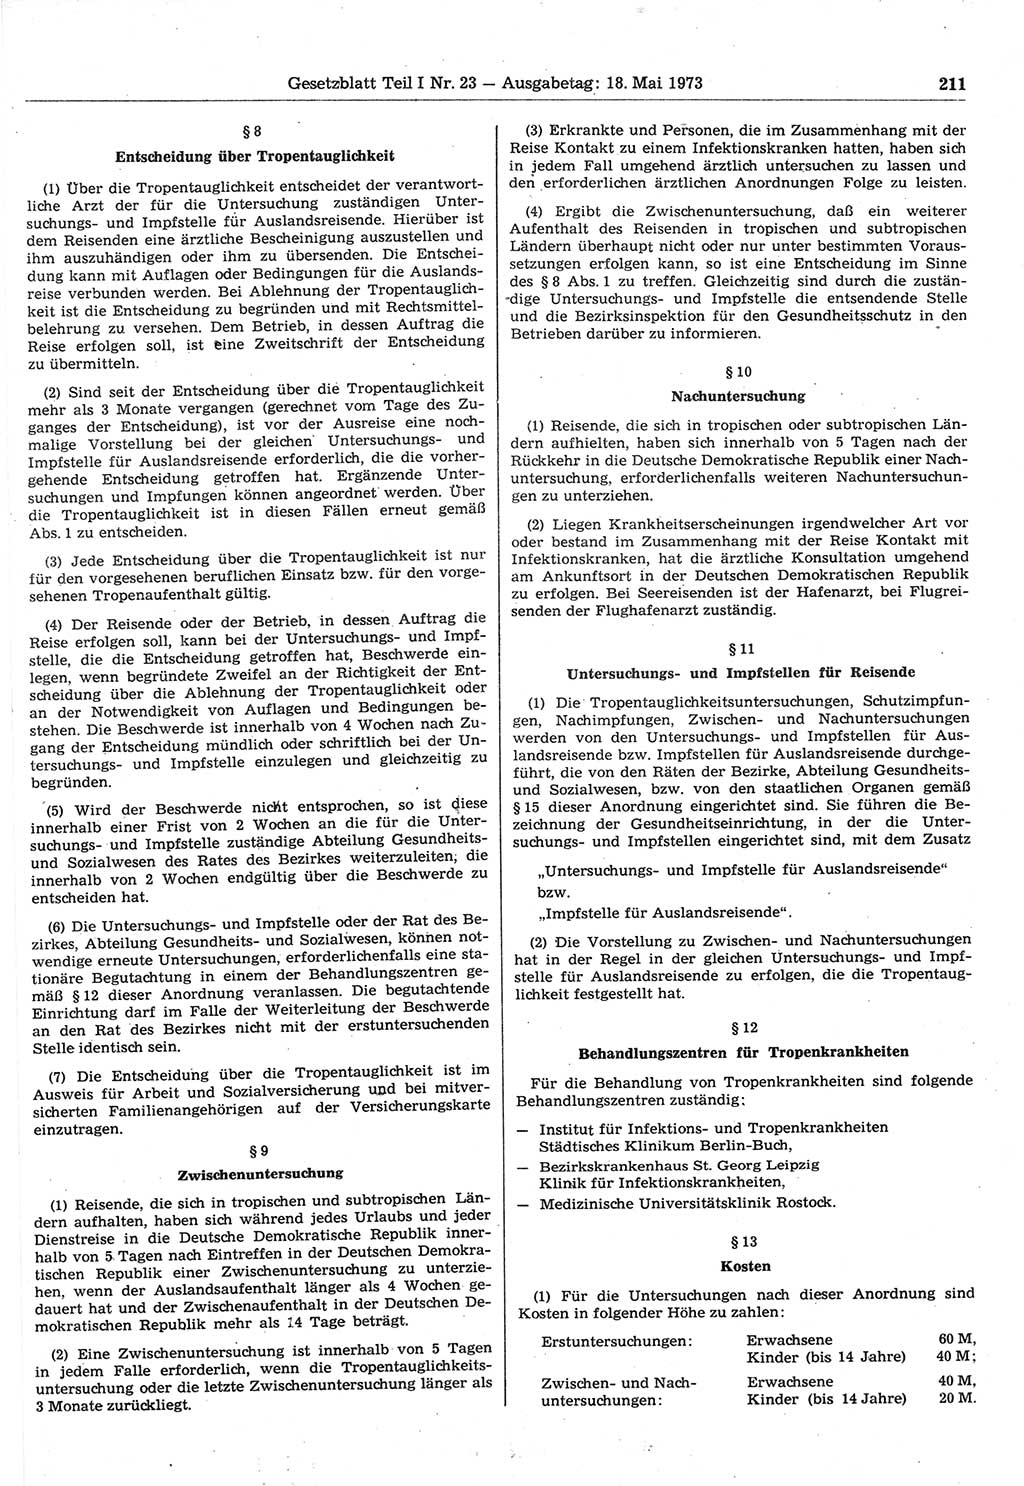 Gesetzblatt (GBl.) der Deutschen Demokratischen Republik (DDR) Teil Ⅰ 1973, Seite 211 (GBl. DDR Ⅰ 1973, S. 211)